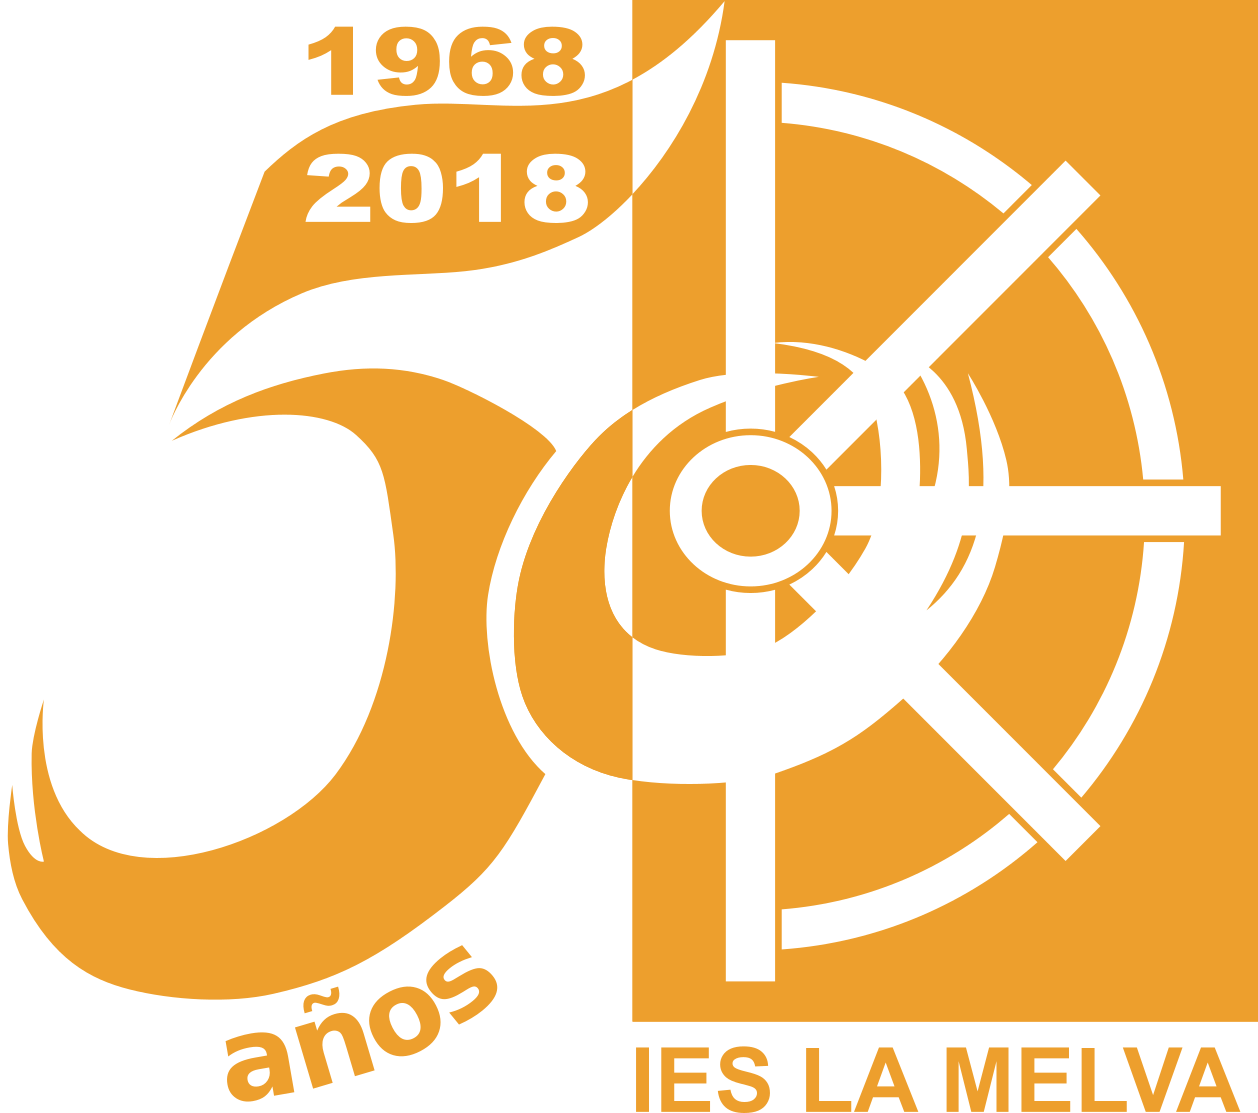 Logotipo oficial del centro y del 50 aniversario.